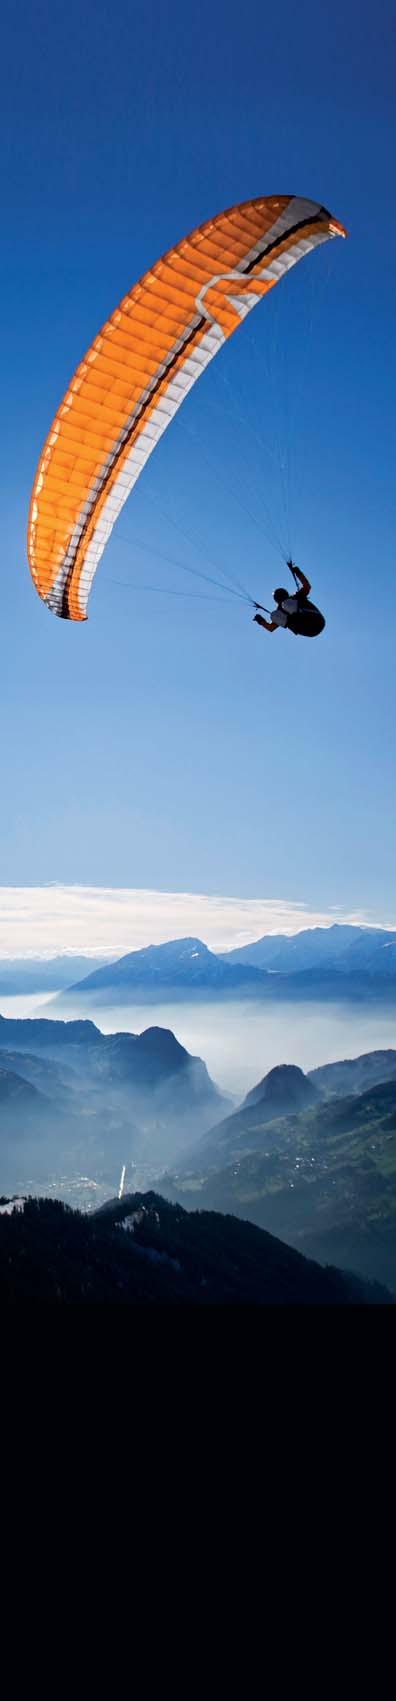 FLUGGEBIET GARMISCH Blick auf einen der Osterfelder Startplätze oberhalb der Gipfelstation Atemberaubender Blick über Garmisch. Im Hintergrund der Wank. Kultur und Tradition wohin man schaut.